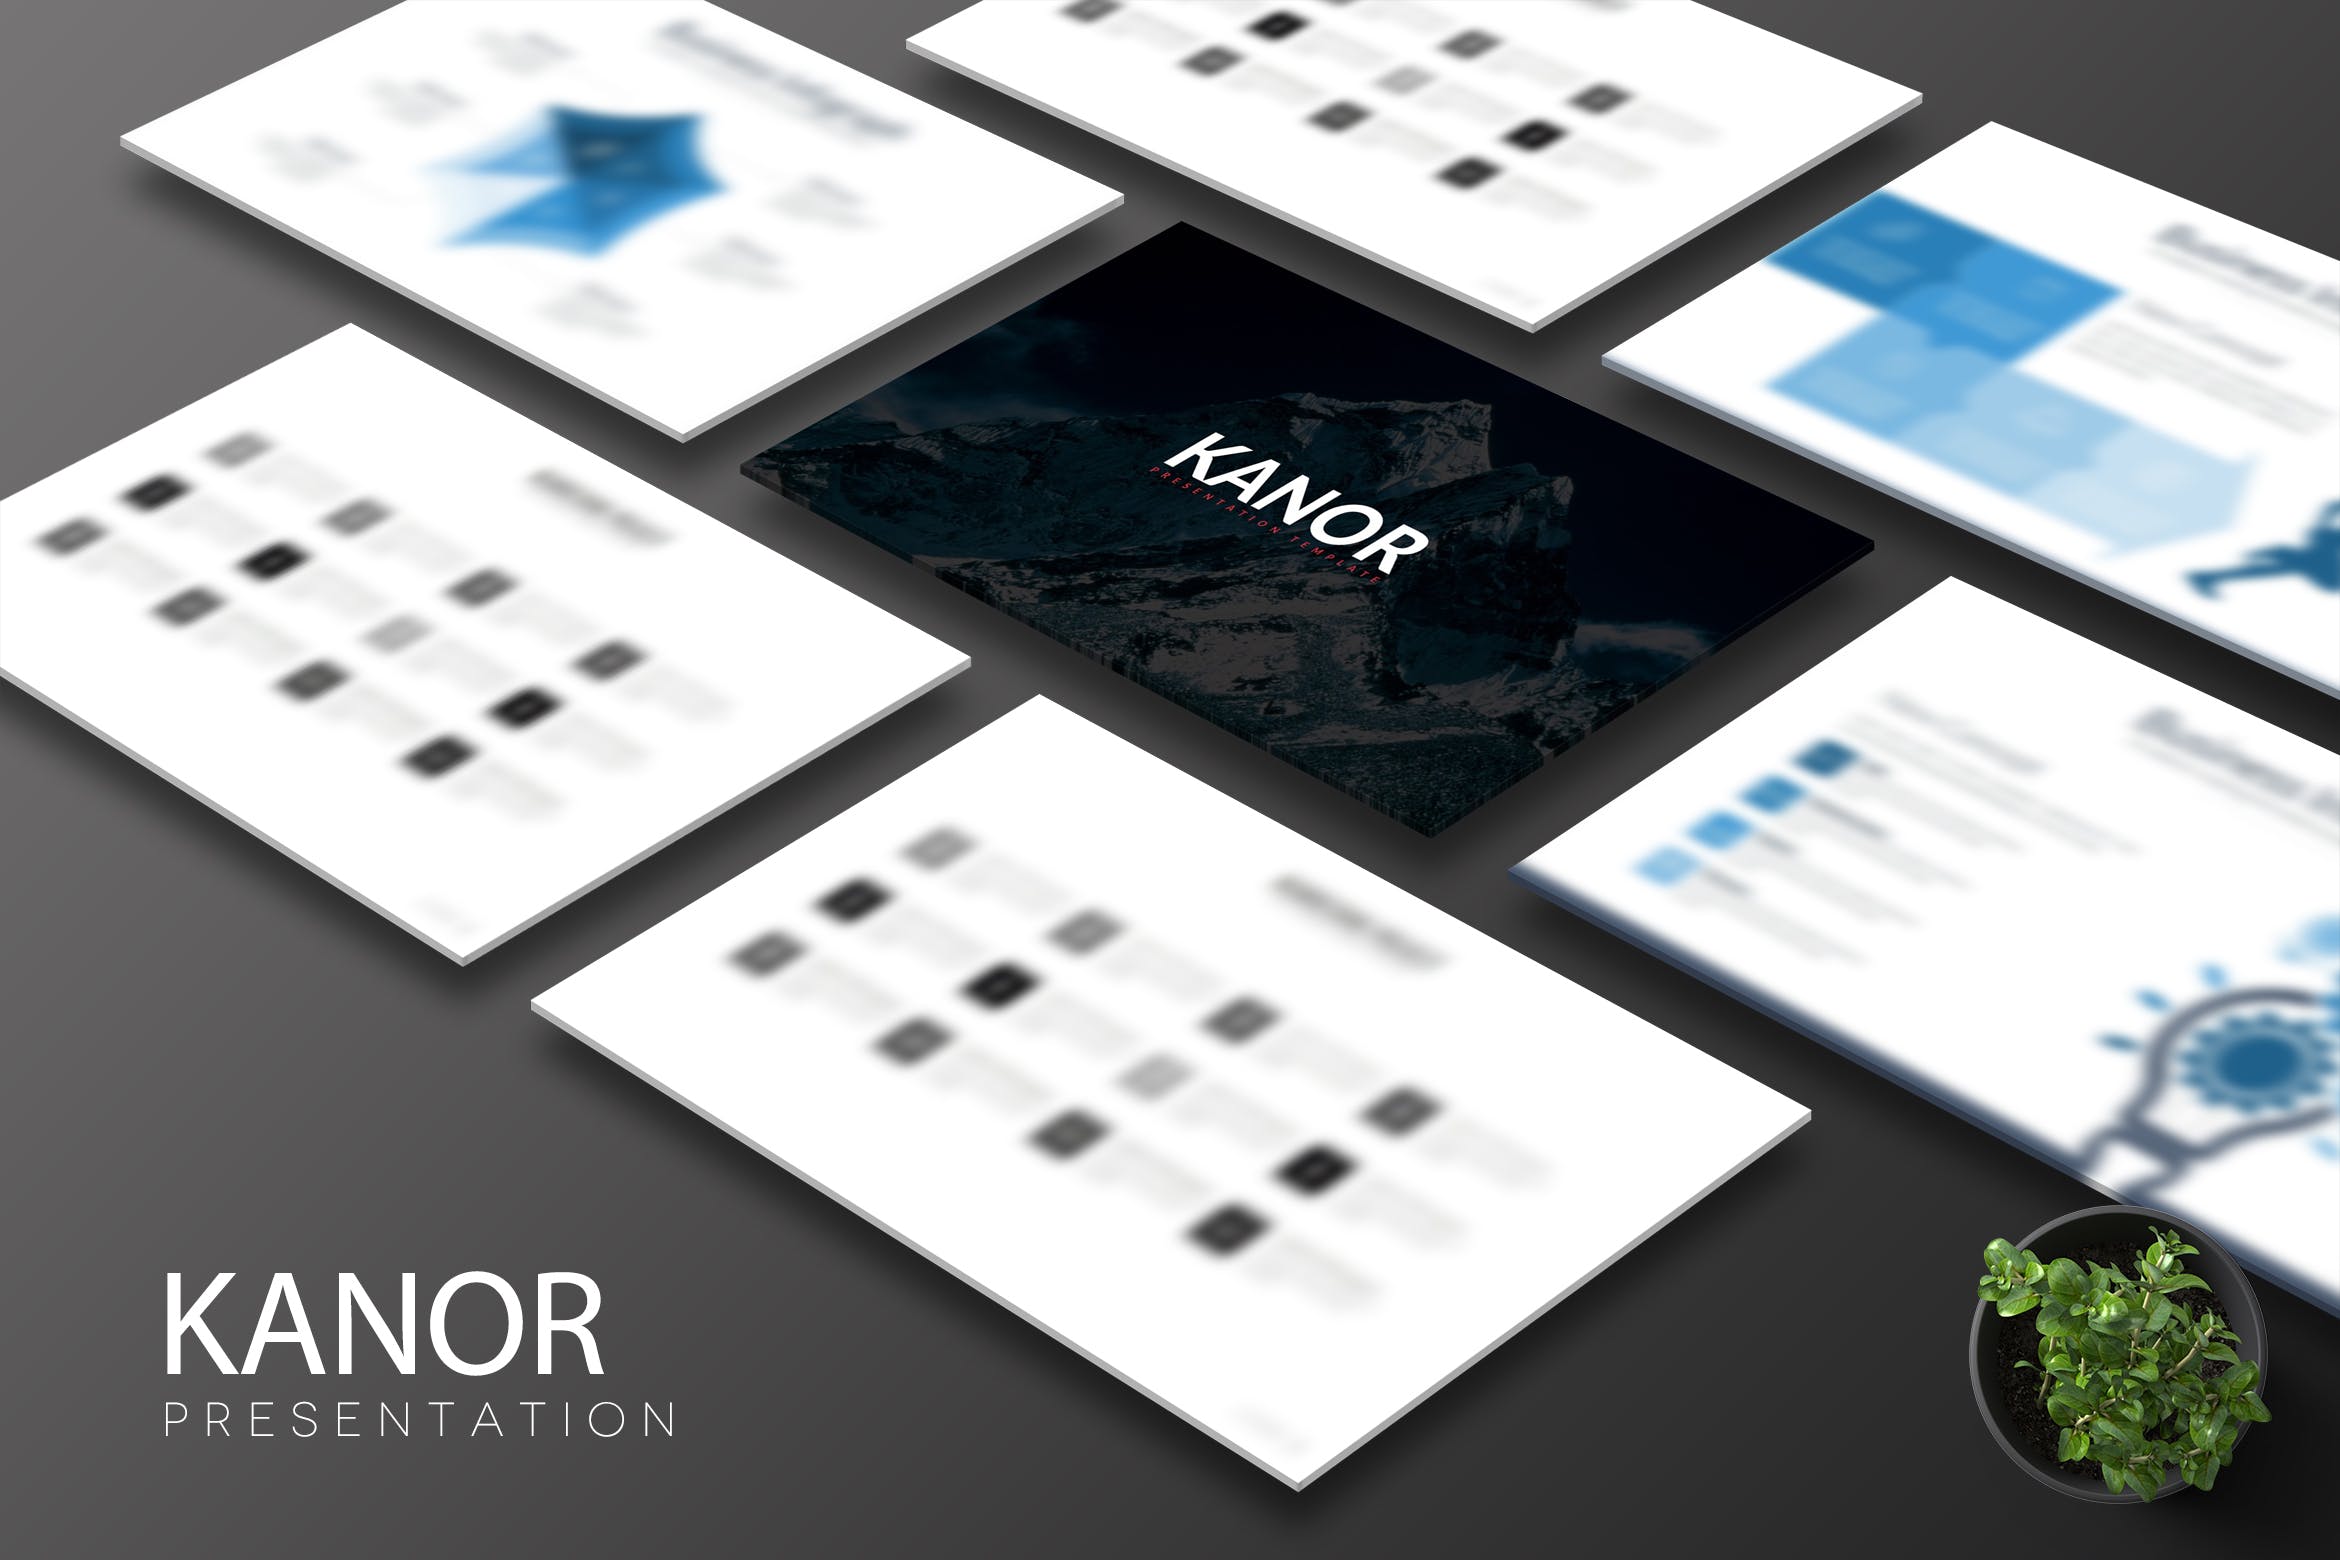 简约设计风格多用途企业亿图网易图库精选Keynote模板设计模板 Kanor – Keynote Template插图